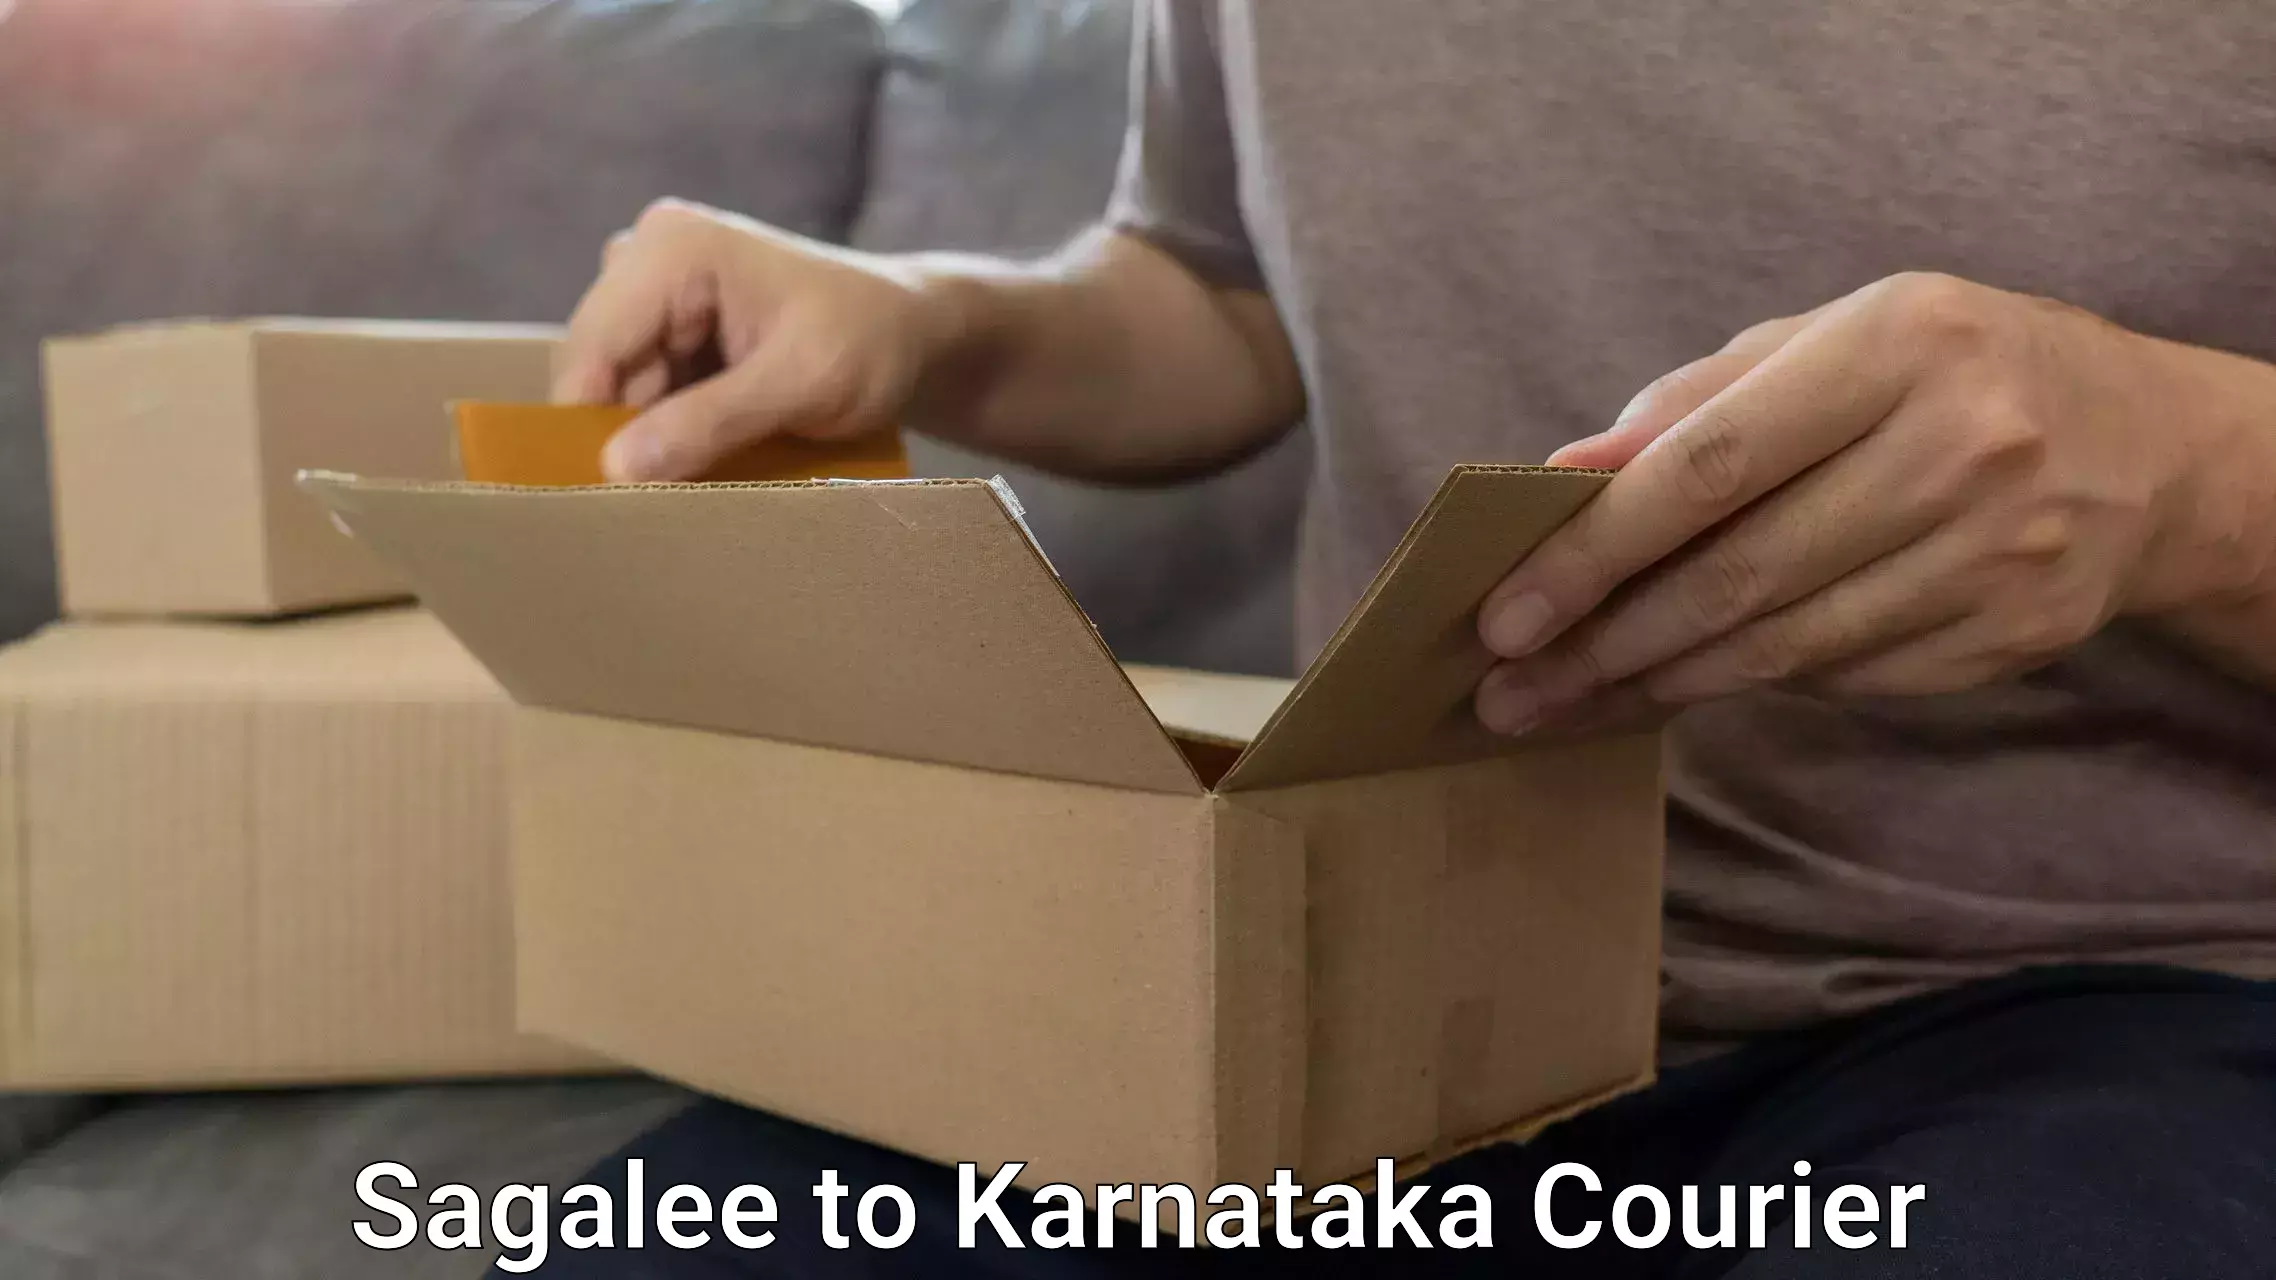 Hassle-free luggage shipping Sagalee to Kanjarakatte